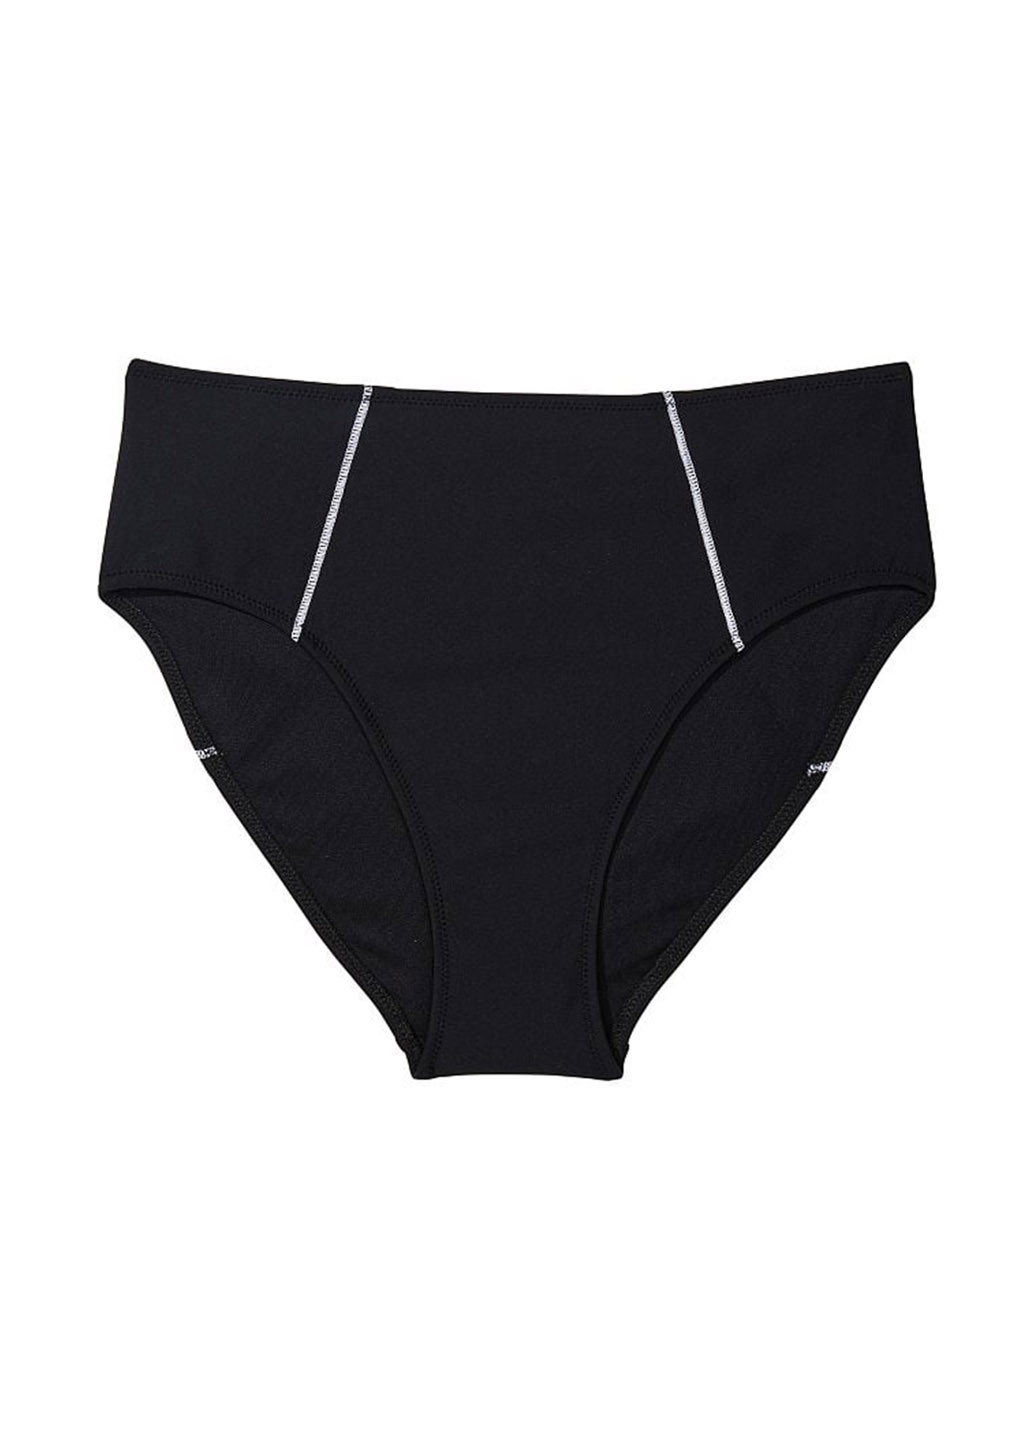 Черный летний купальник (лиф, трусы) раздельный, топ Victoria's Secret